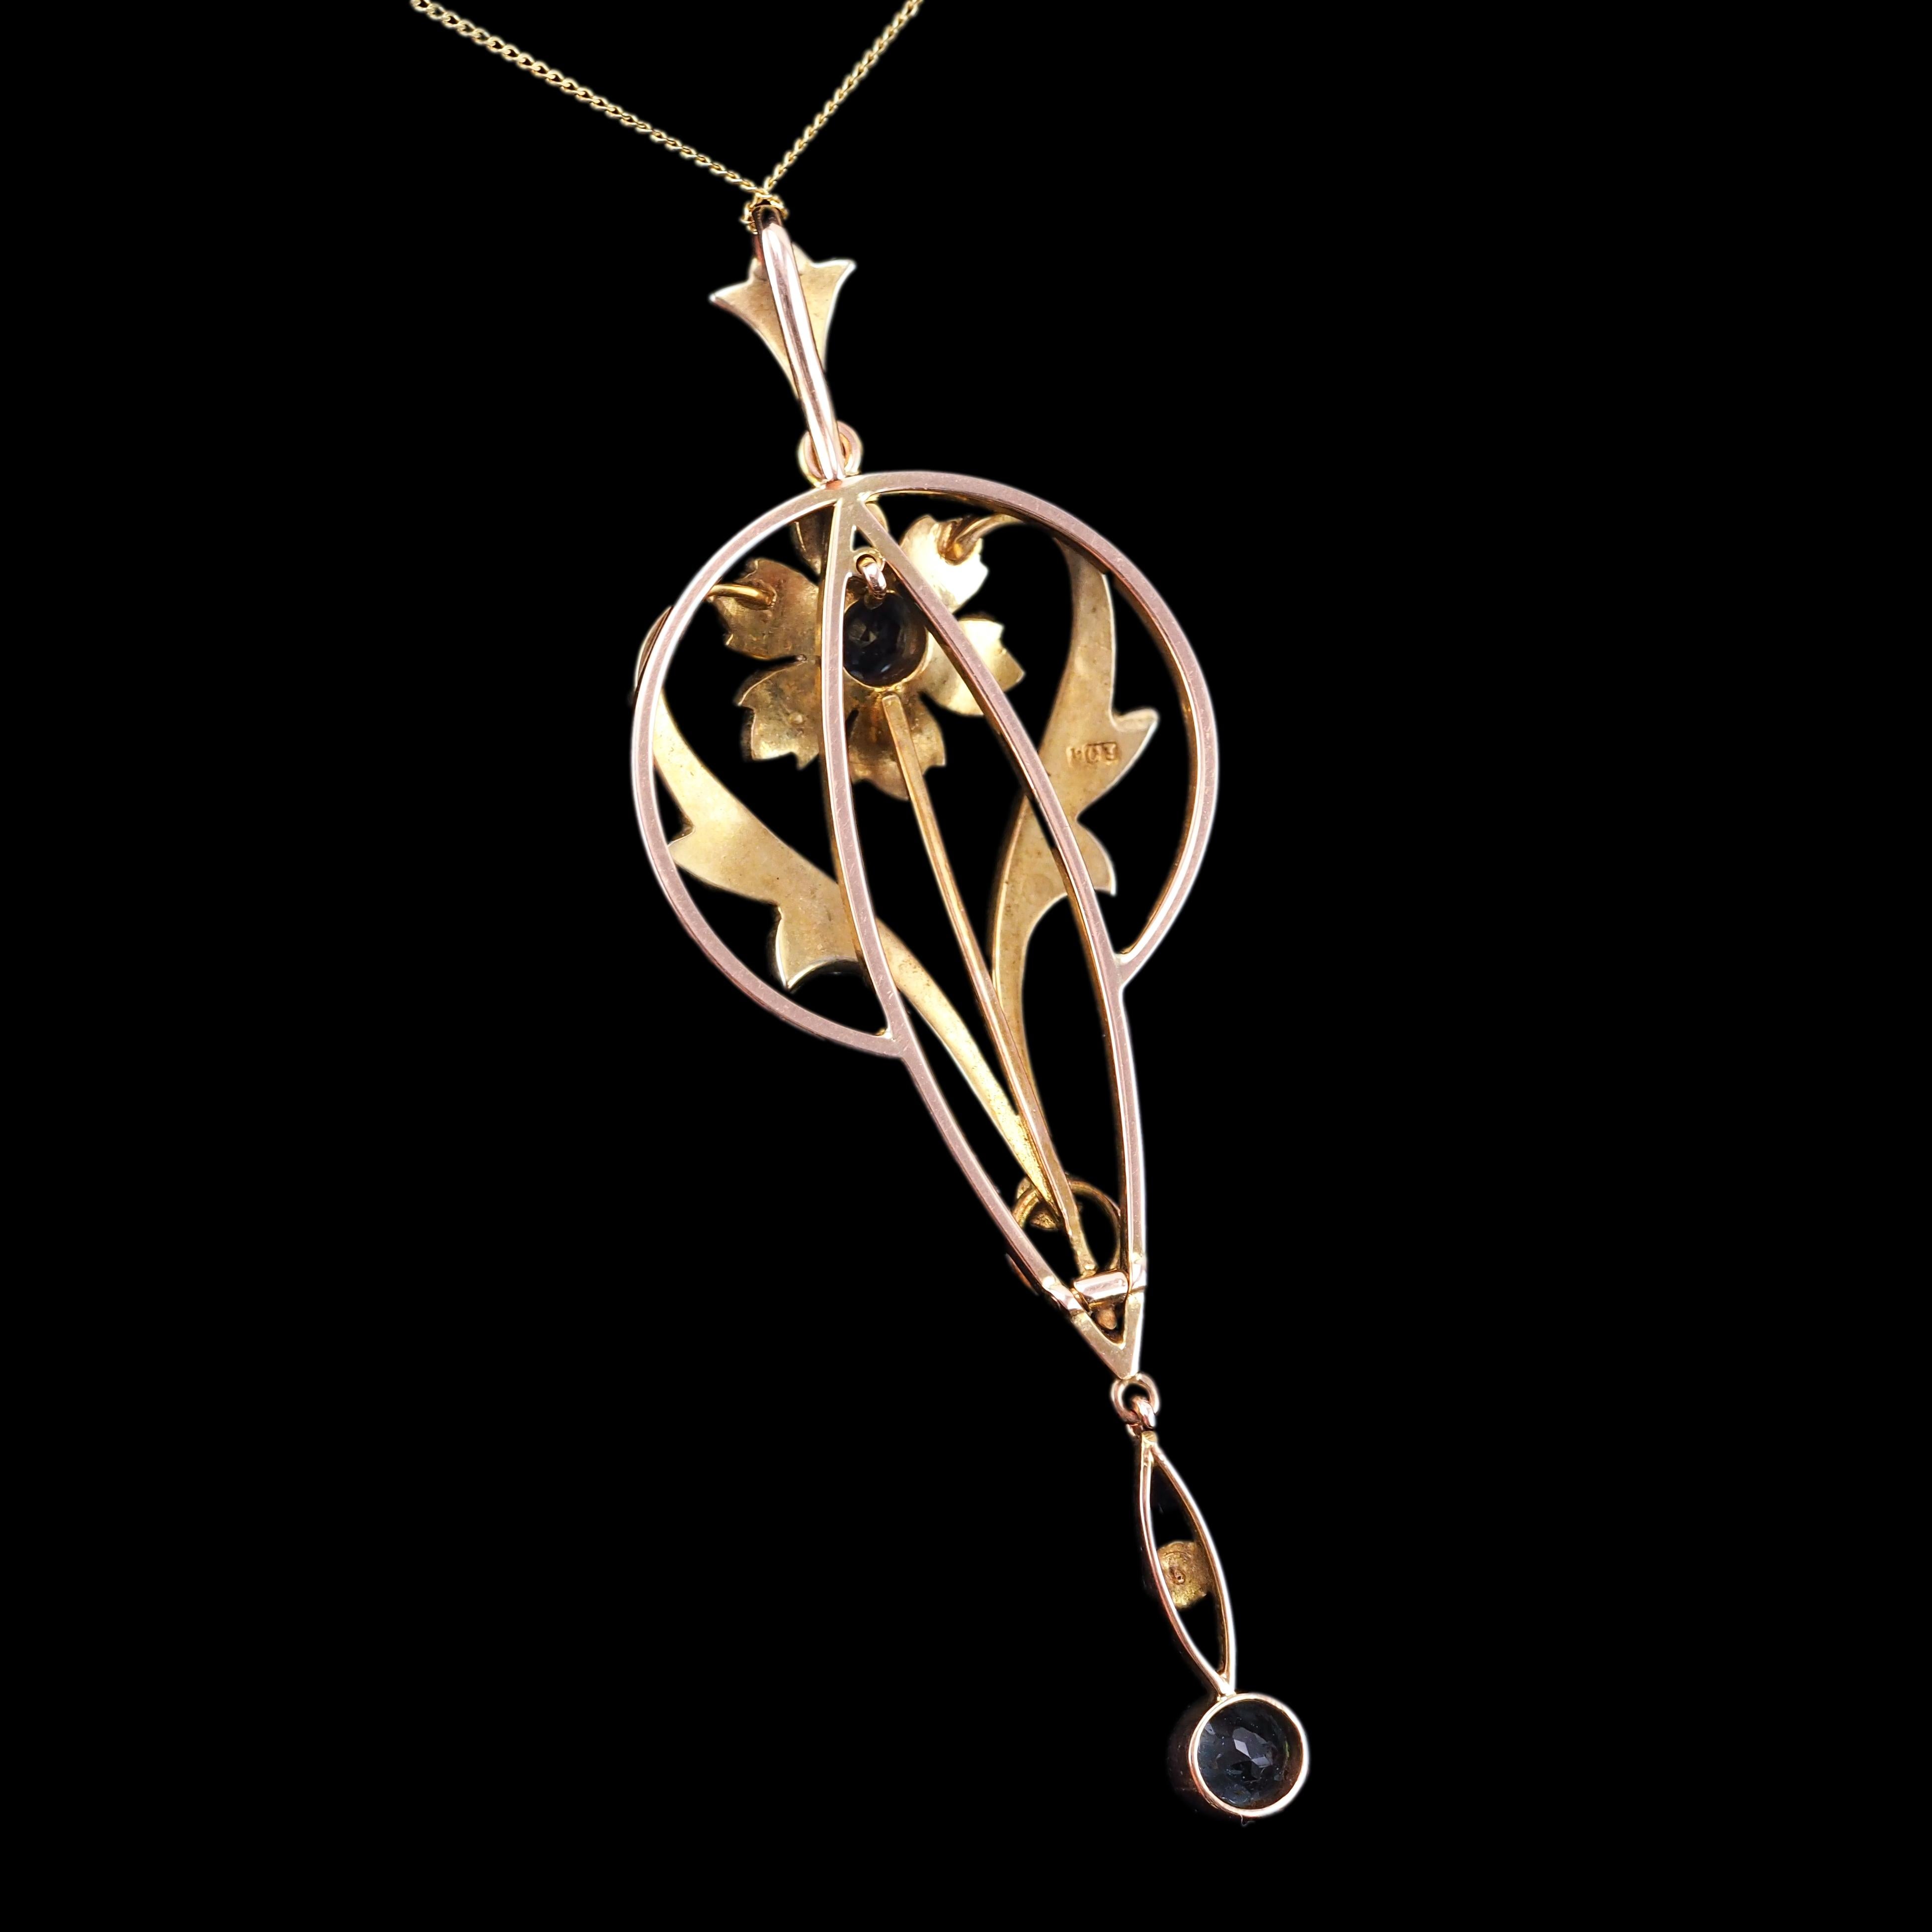 Antique Aquamarine Pendant Necklace Seed Pearls 9K Gold Art Nouveau c.1905 5